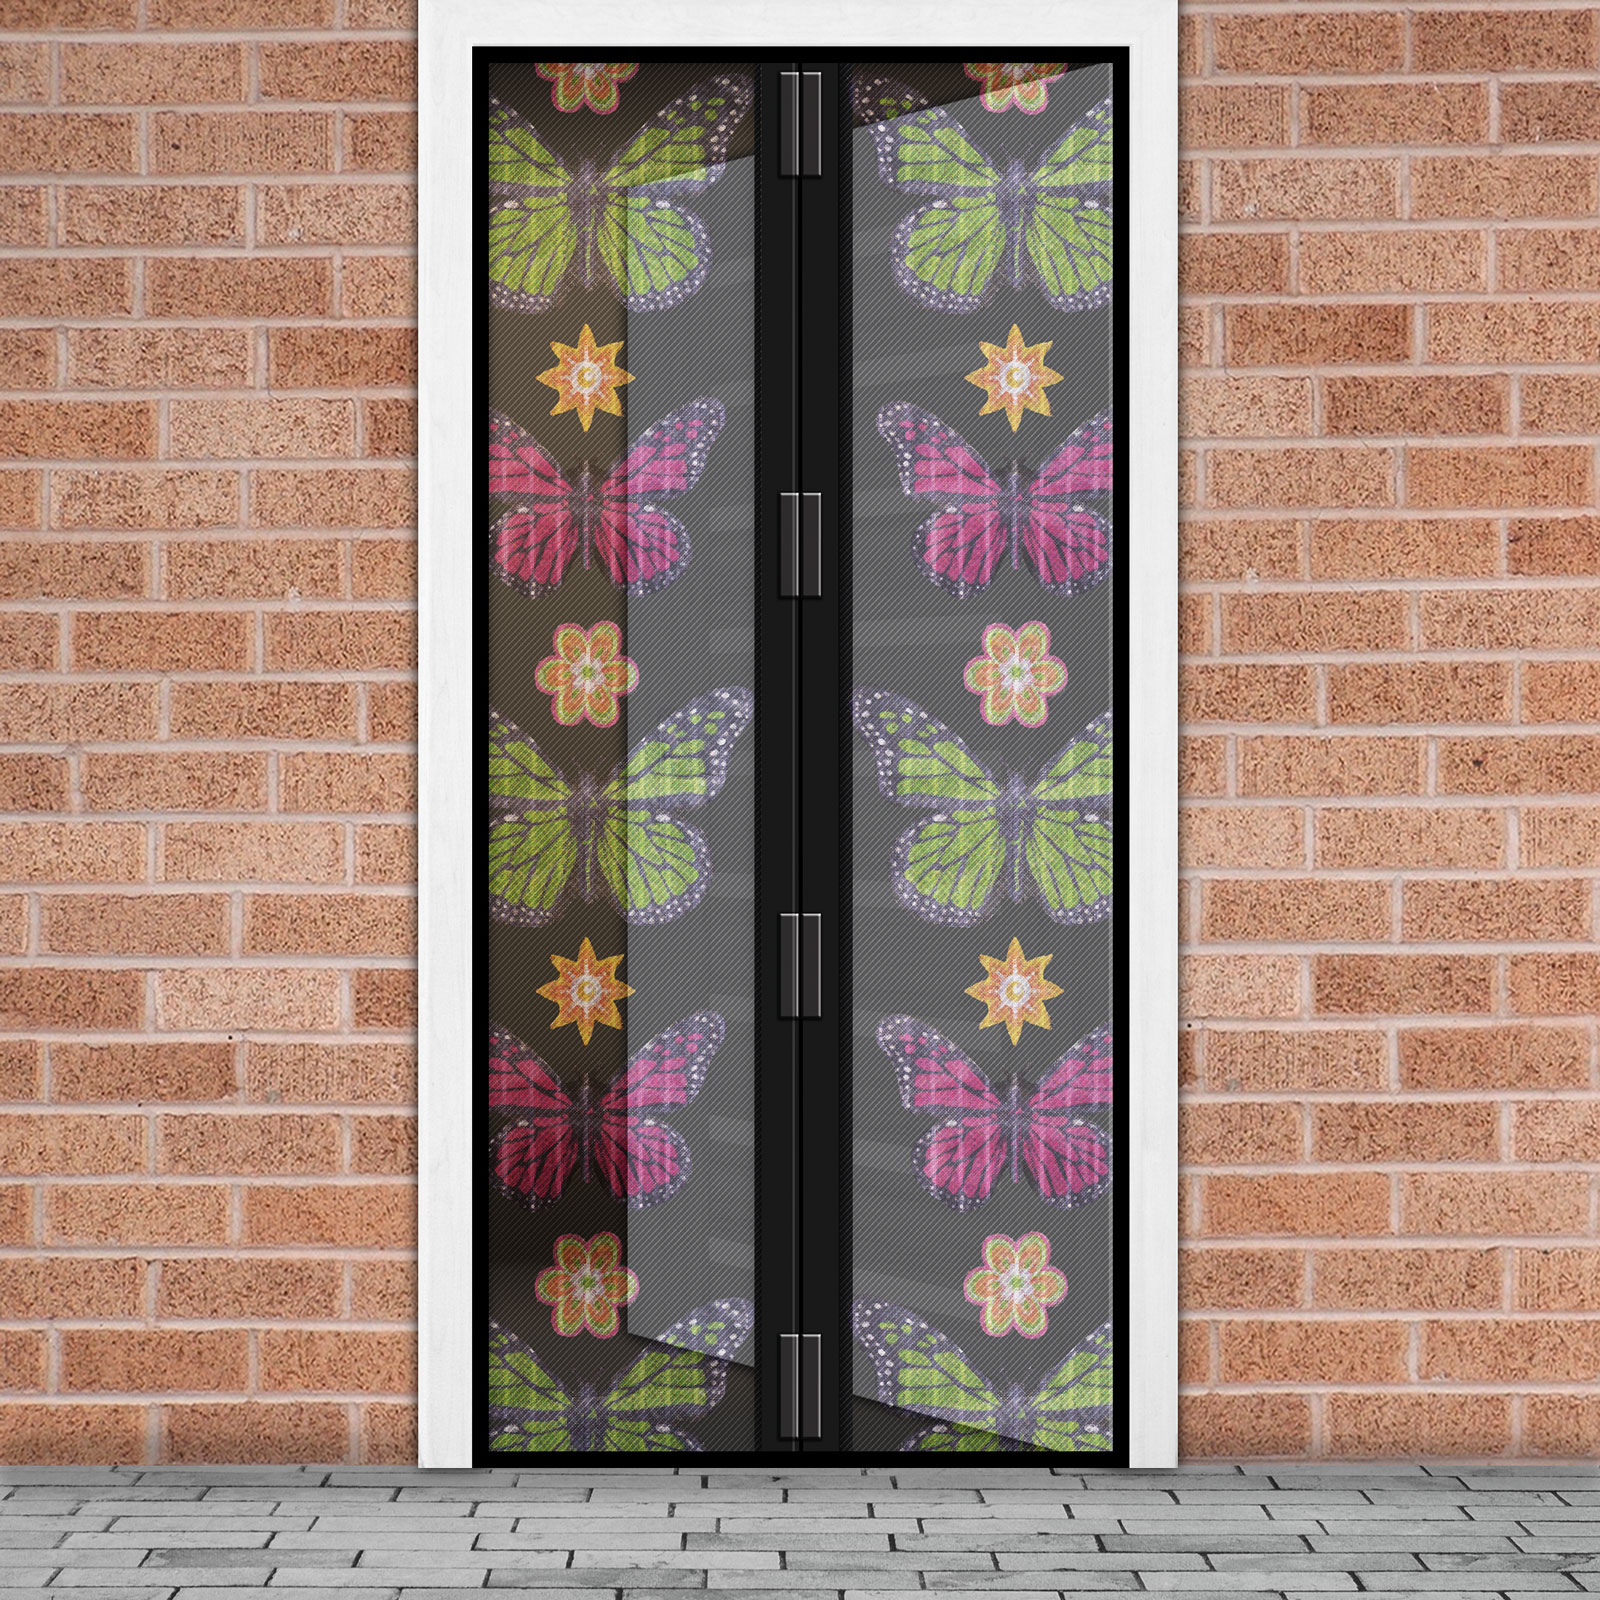 Szúnyogháló függöny ajtóra -mágneses- 100 x 210 cm - virágos pillangós